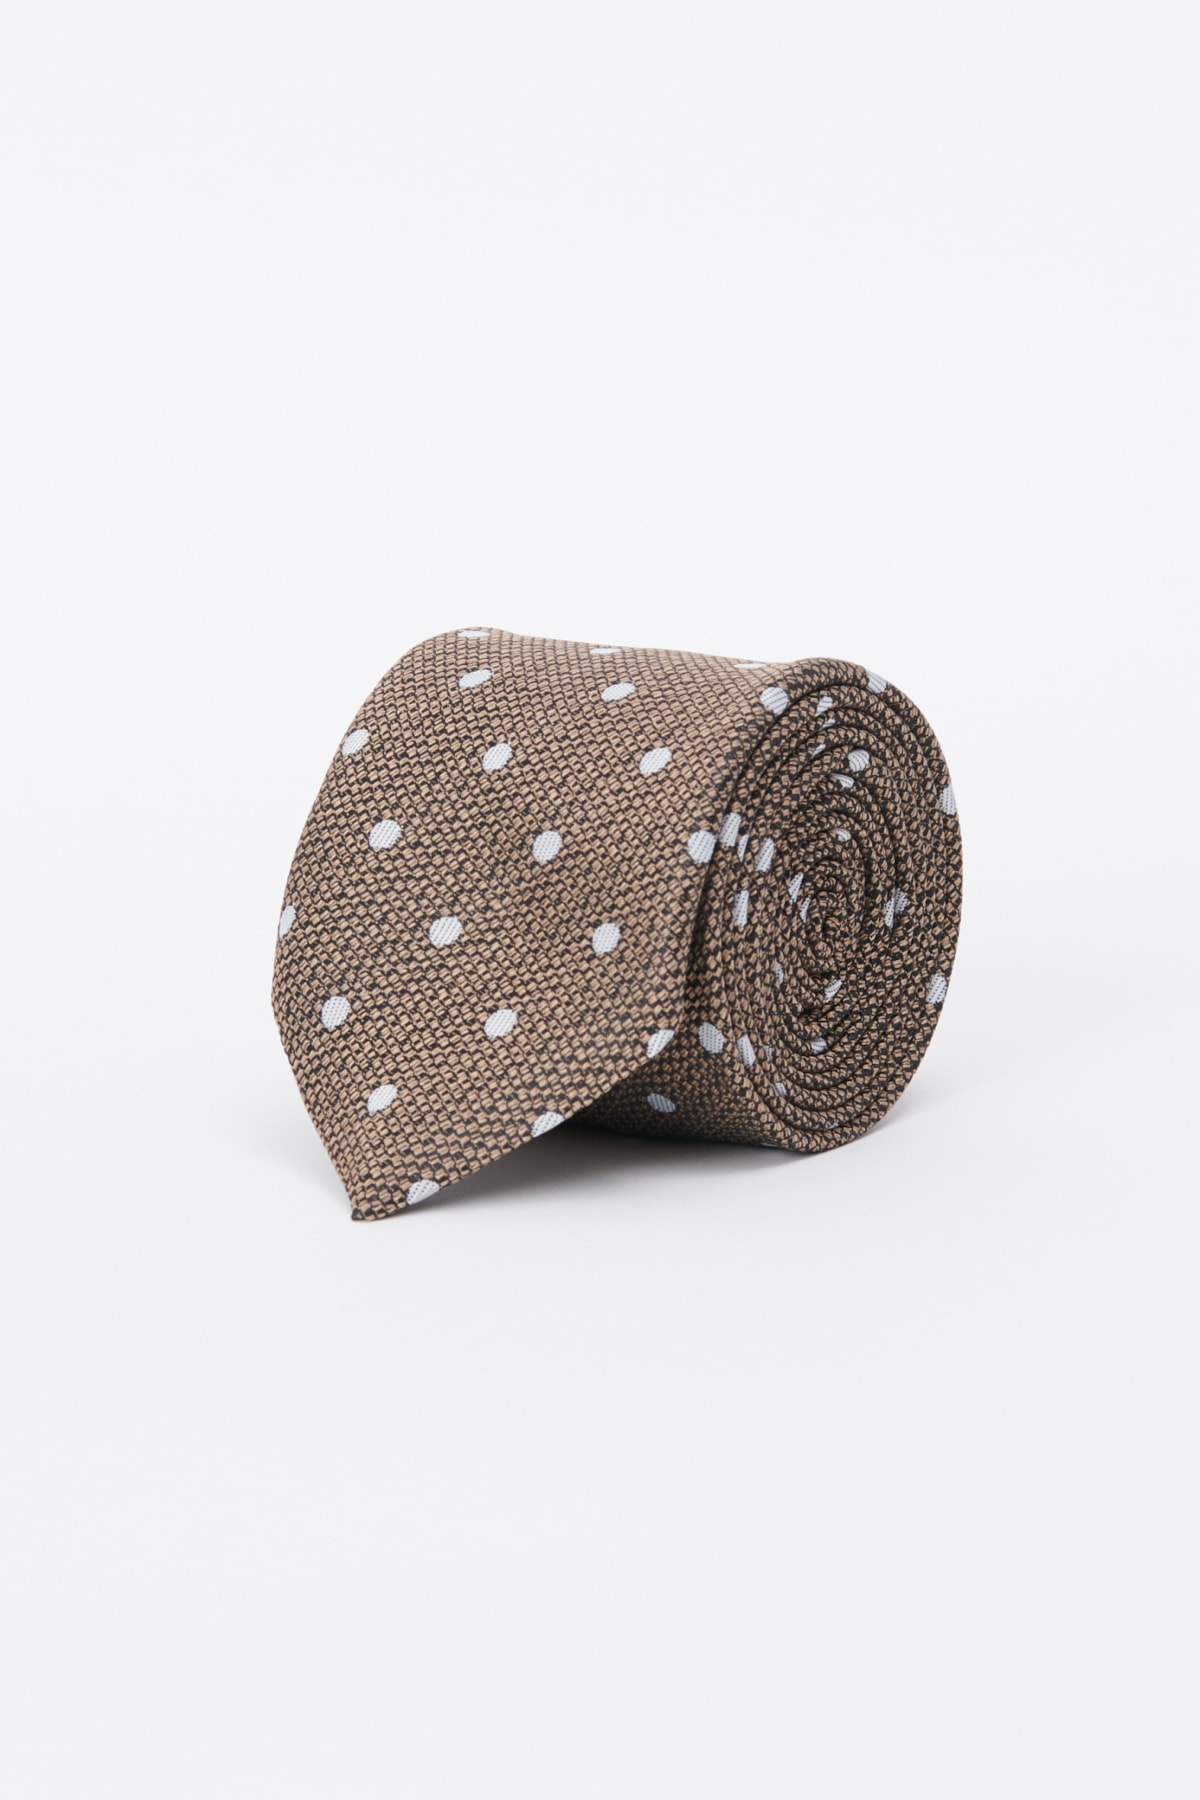 ALTINYILDIZ CLASSICS Men's Beige-gray Patterned Tie